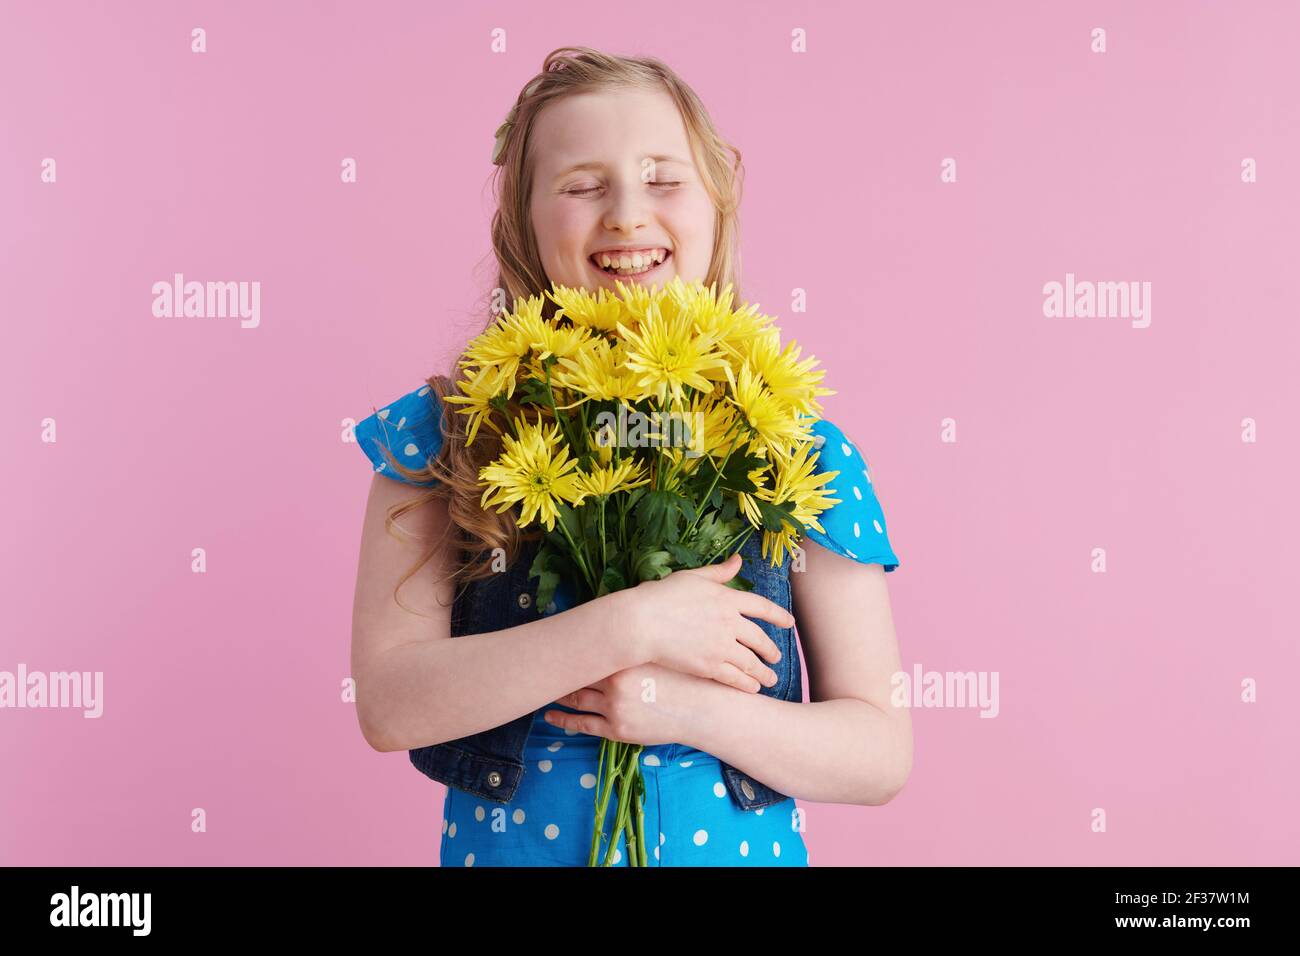 Happy modernes Kind in gepunkteten blauen Overall mit gelben Chrysanthemen Blumen vor rosa Hintergrund. Stockfoto